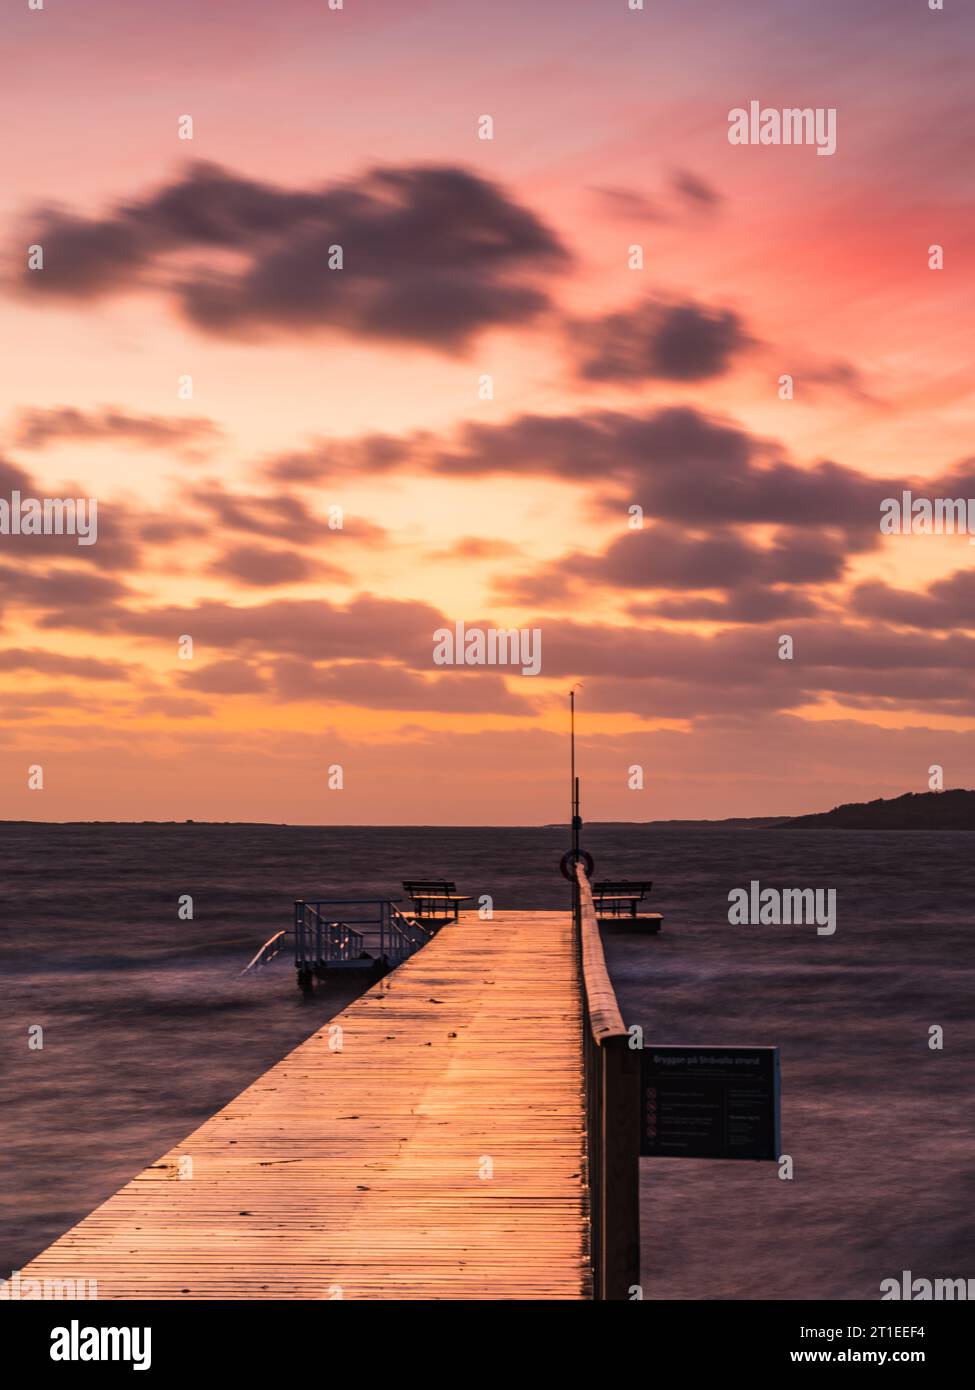 Ruhiger Sonnenuntergang über einem hölzernen Pier an einem windigen schwedischen Strand. Stockfoto